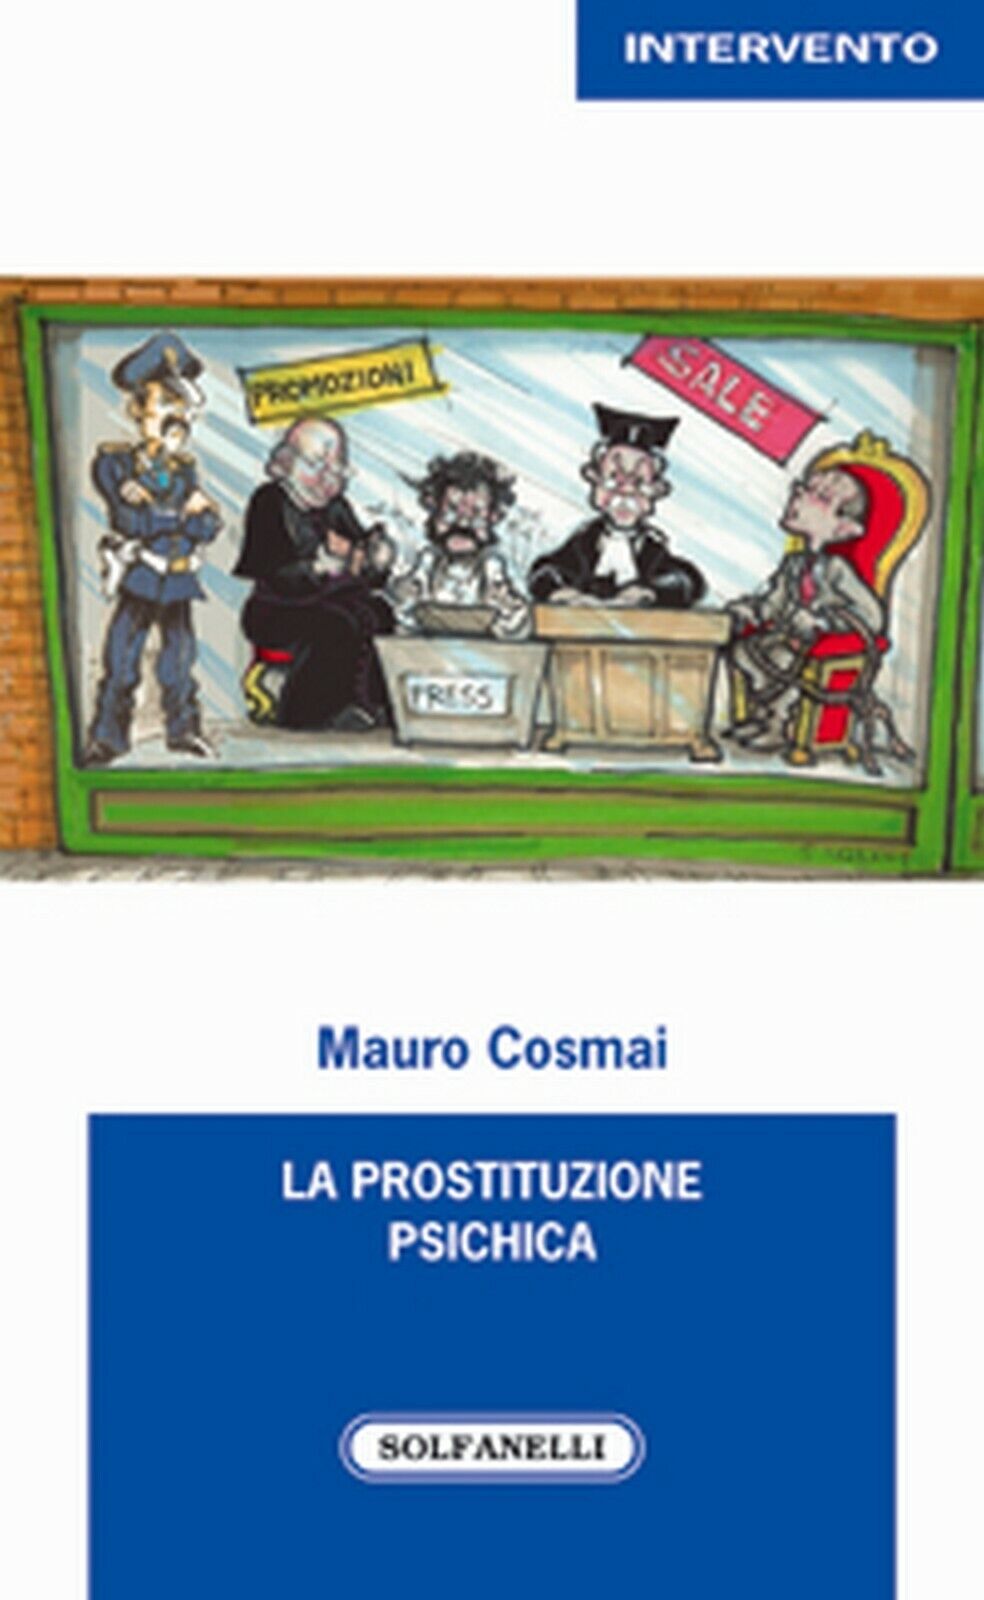 LA PROSTITUZIONE PSICHICA  di Mauro Cosmai,  Solfanelli Edizioni